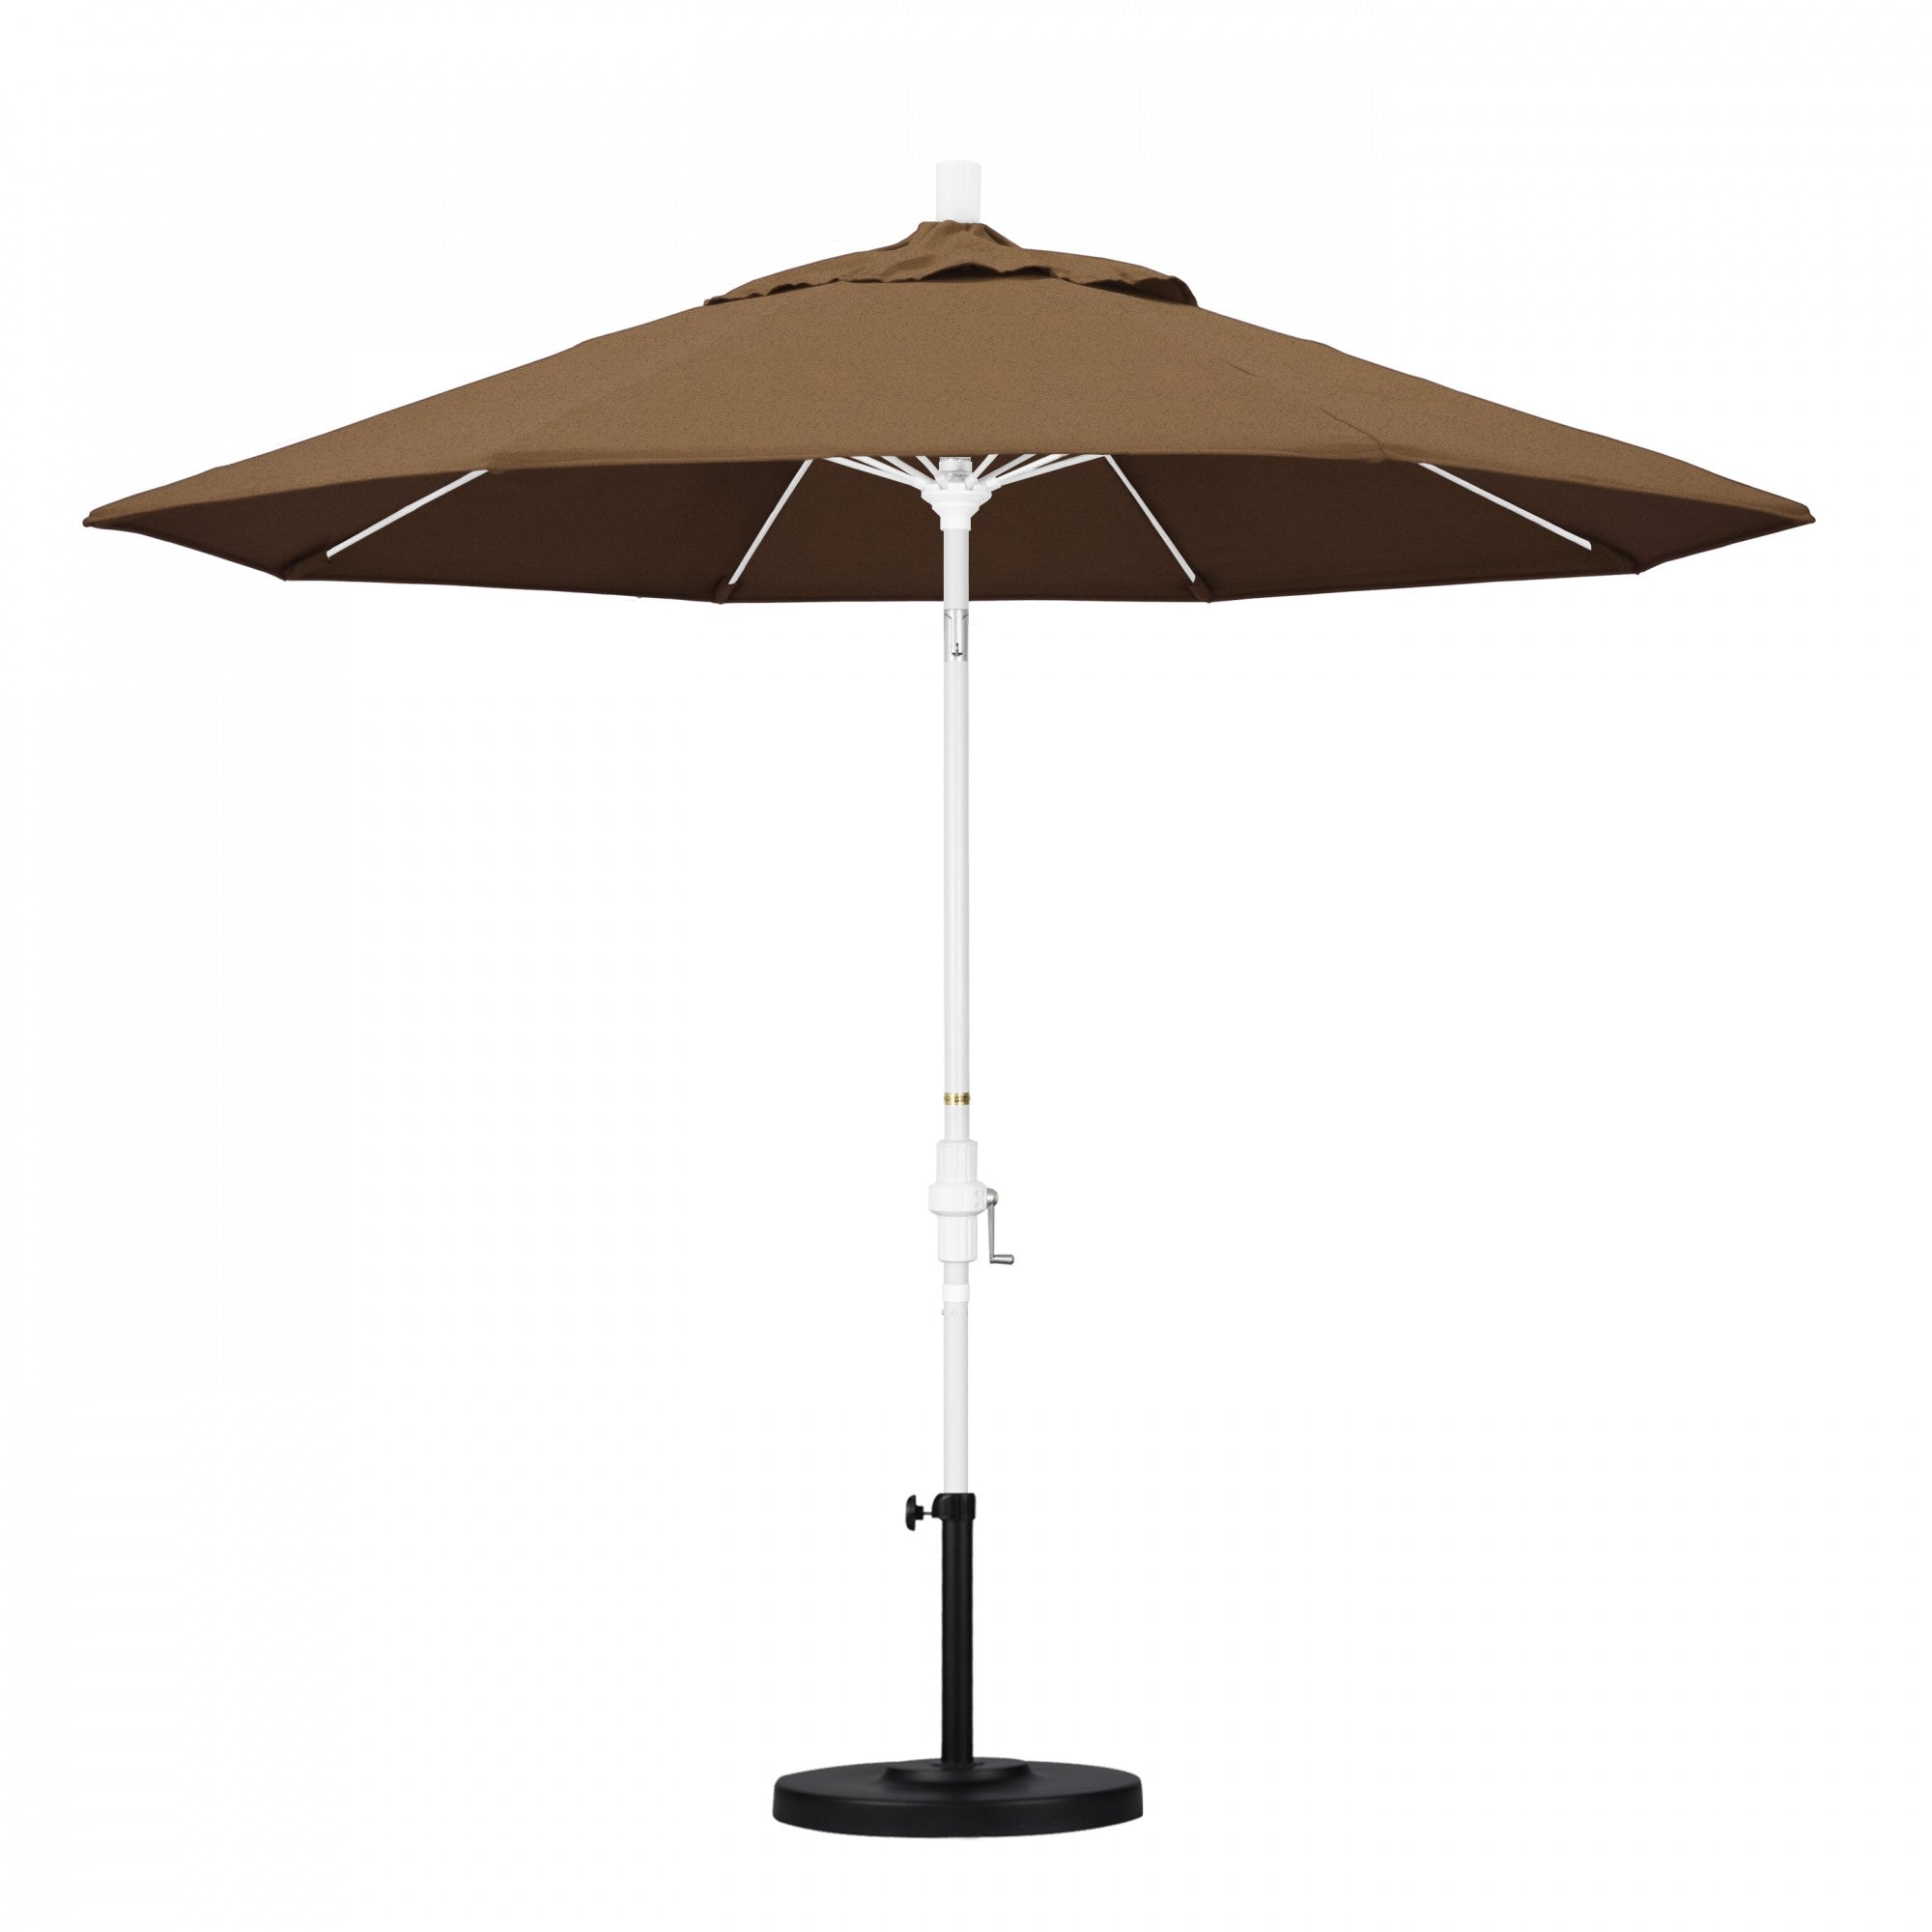 California Umbrella - 9' - Patio Umbrella Umbrella - Aluminum Pole - Teak - Sunbrella  - GSCUF908170-5488